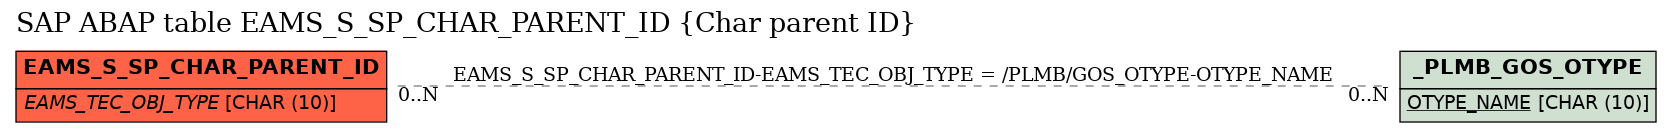 E-R Diagram for table EAMS_S_SP_CHAR_PARENT_ID (Char parent ID)